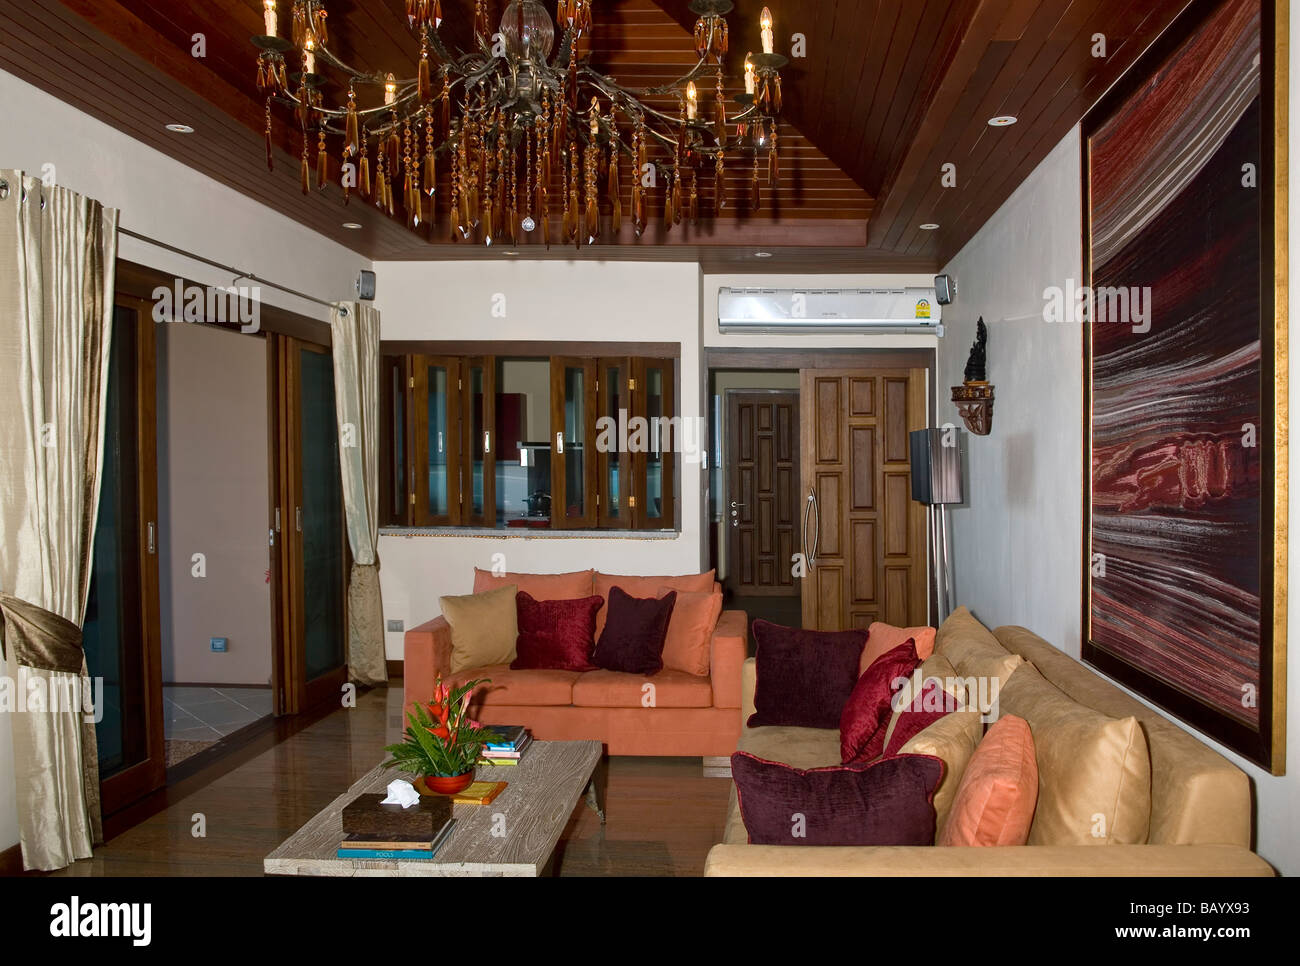 Moderne home asiatische Einrichtung. Luxuriöses und komfortables Wohnzimmer  und Lounge mit weichen Möbel und Kronleuchter. Thailand S.E. Asien  Stockfotografie - Alamy